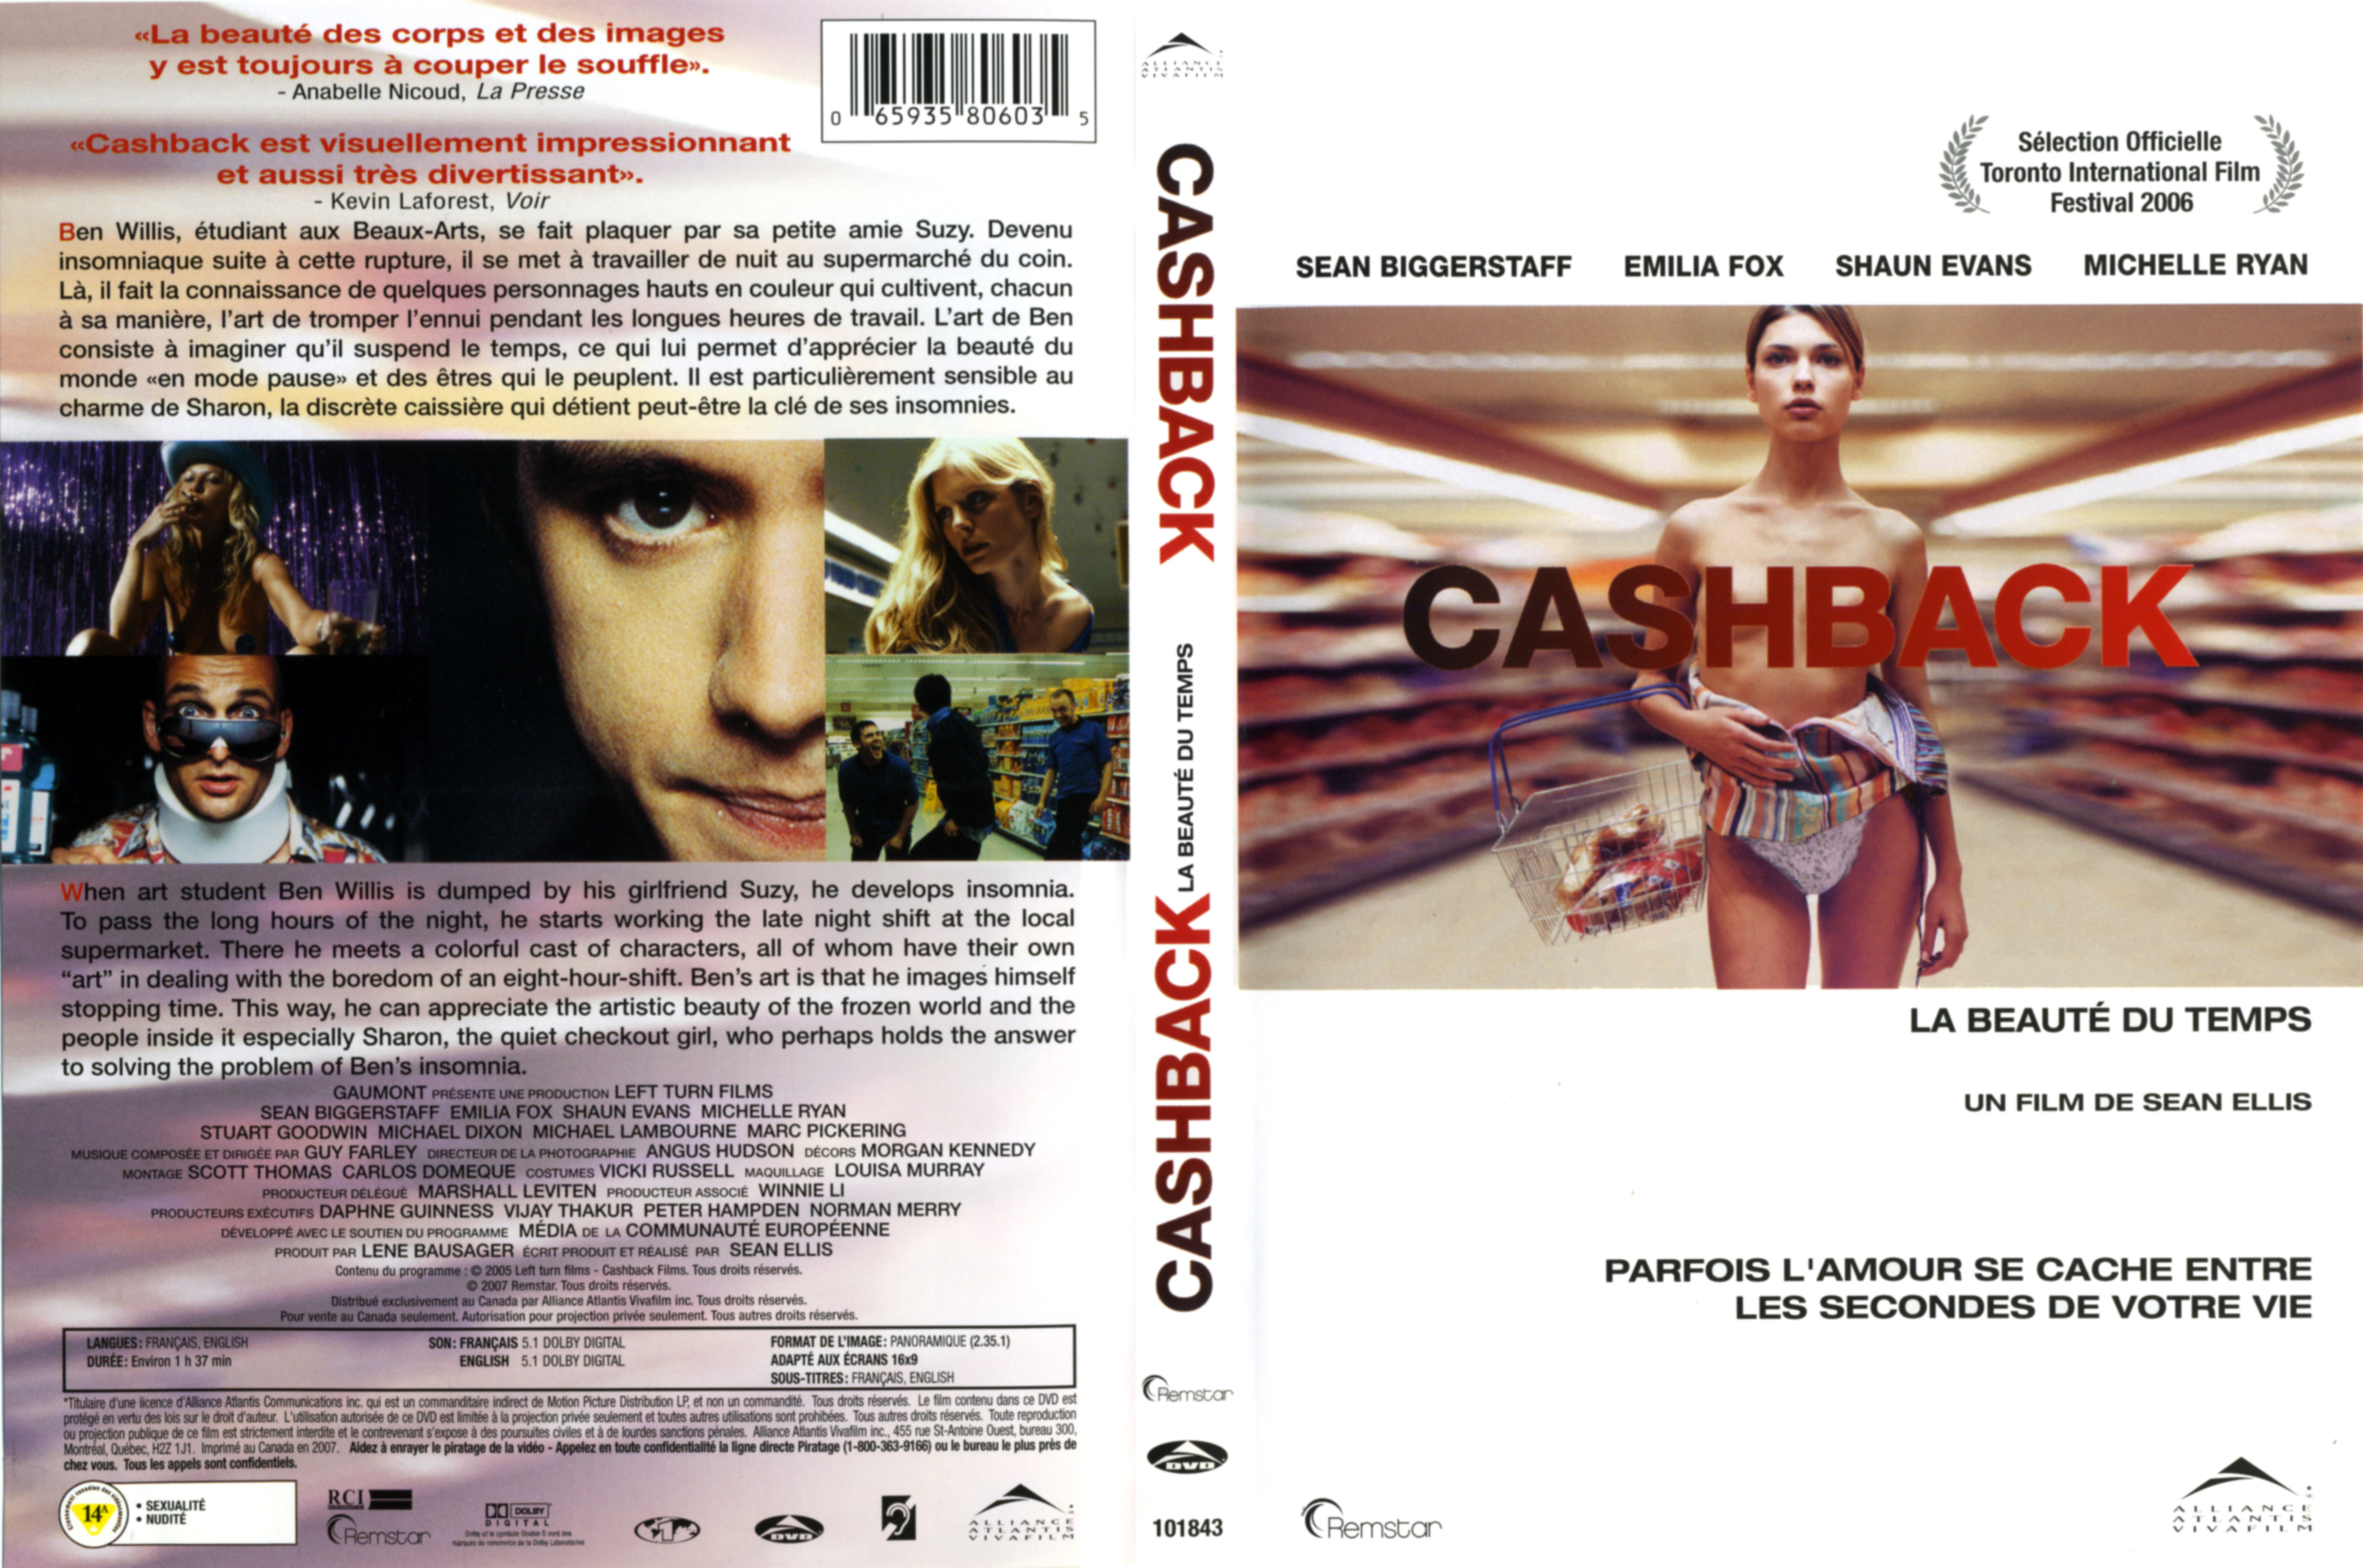 Jaquette DVD Cashback v2